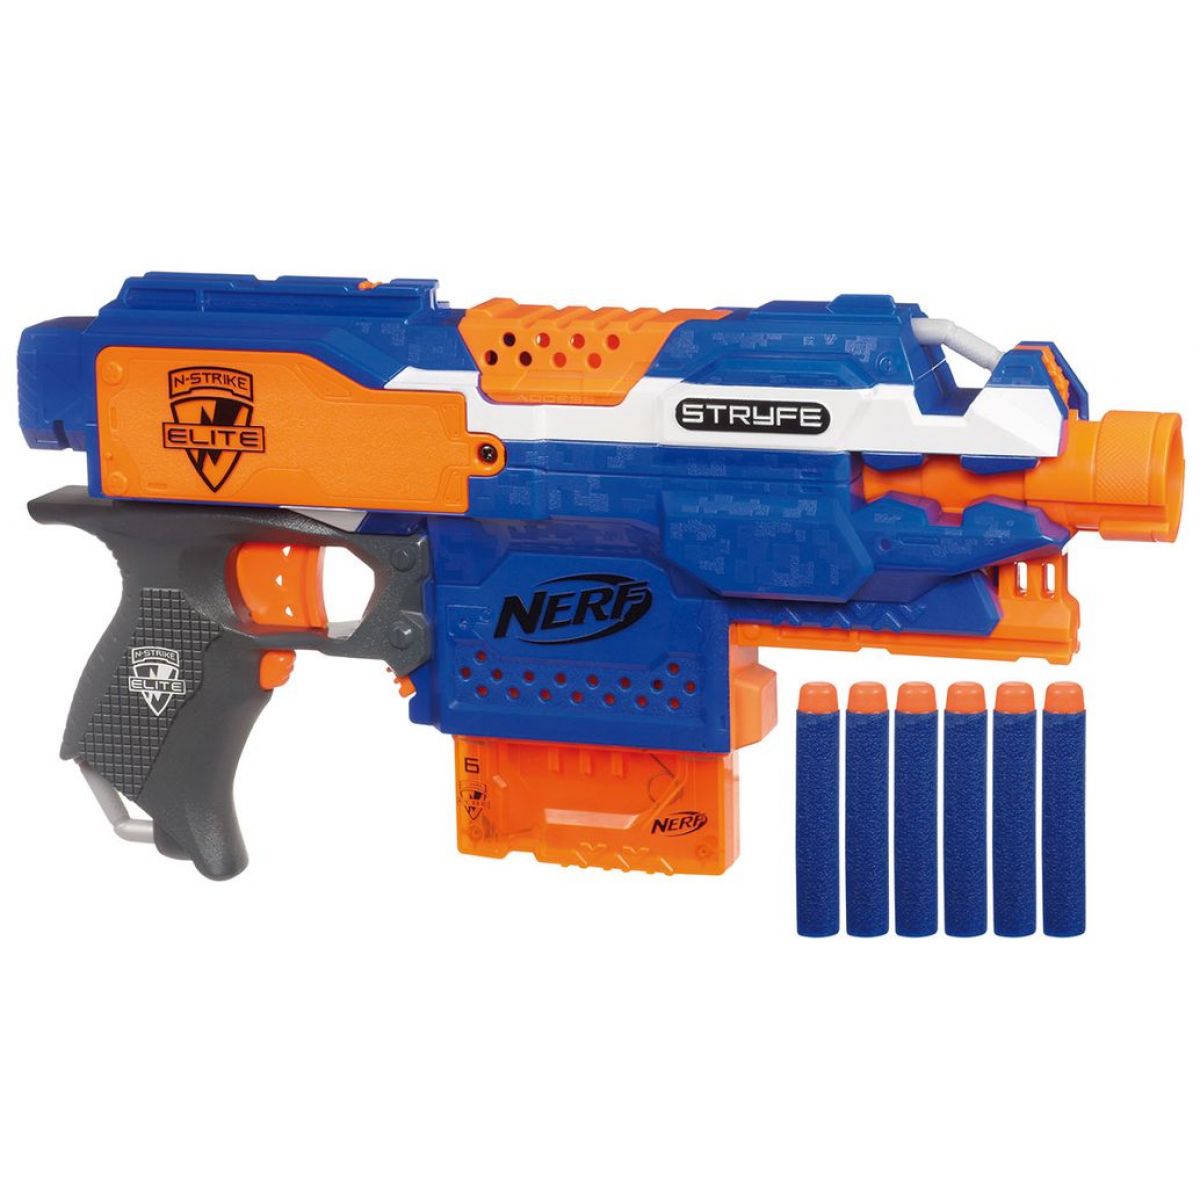 Nerf Elite automatická pistole s clipovým zásobníkem (A0200)